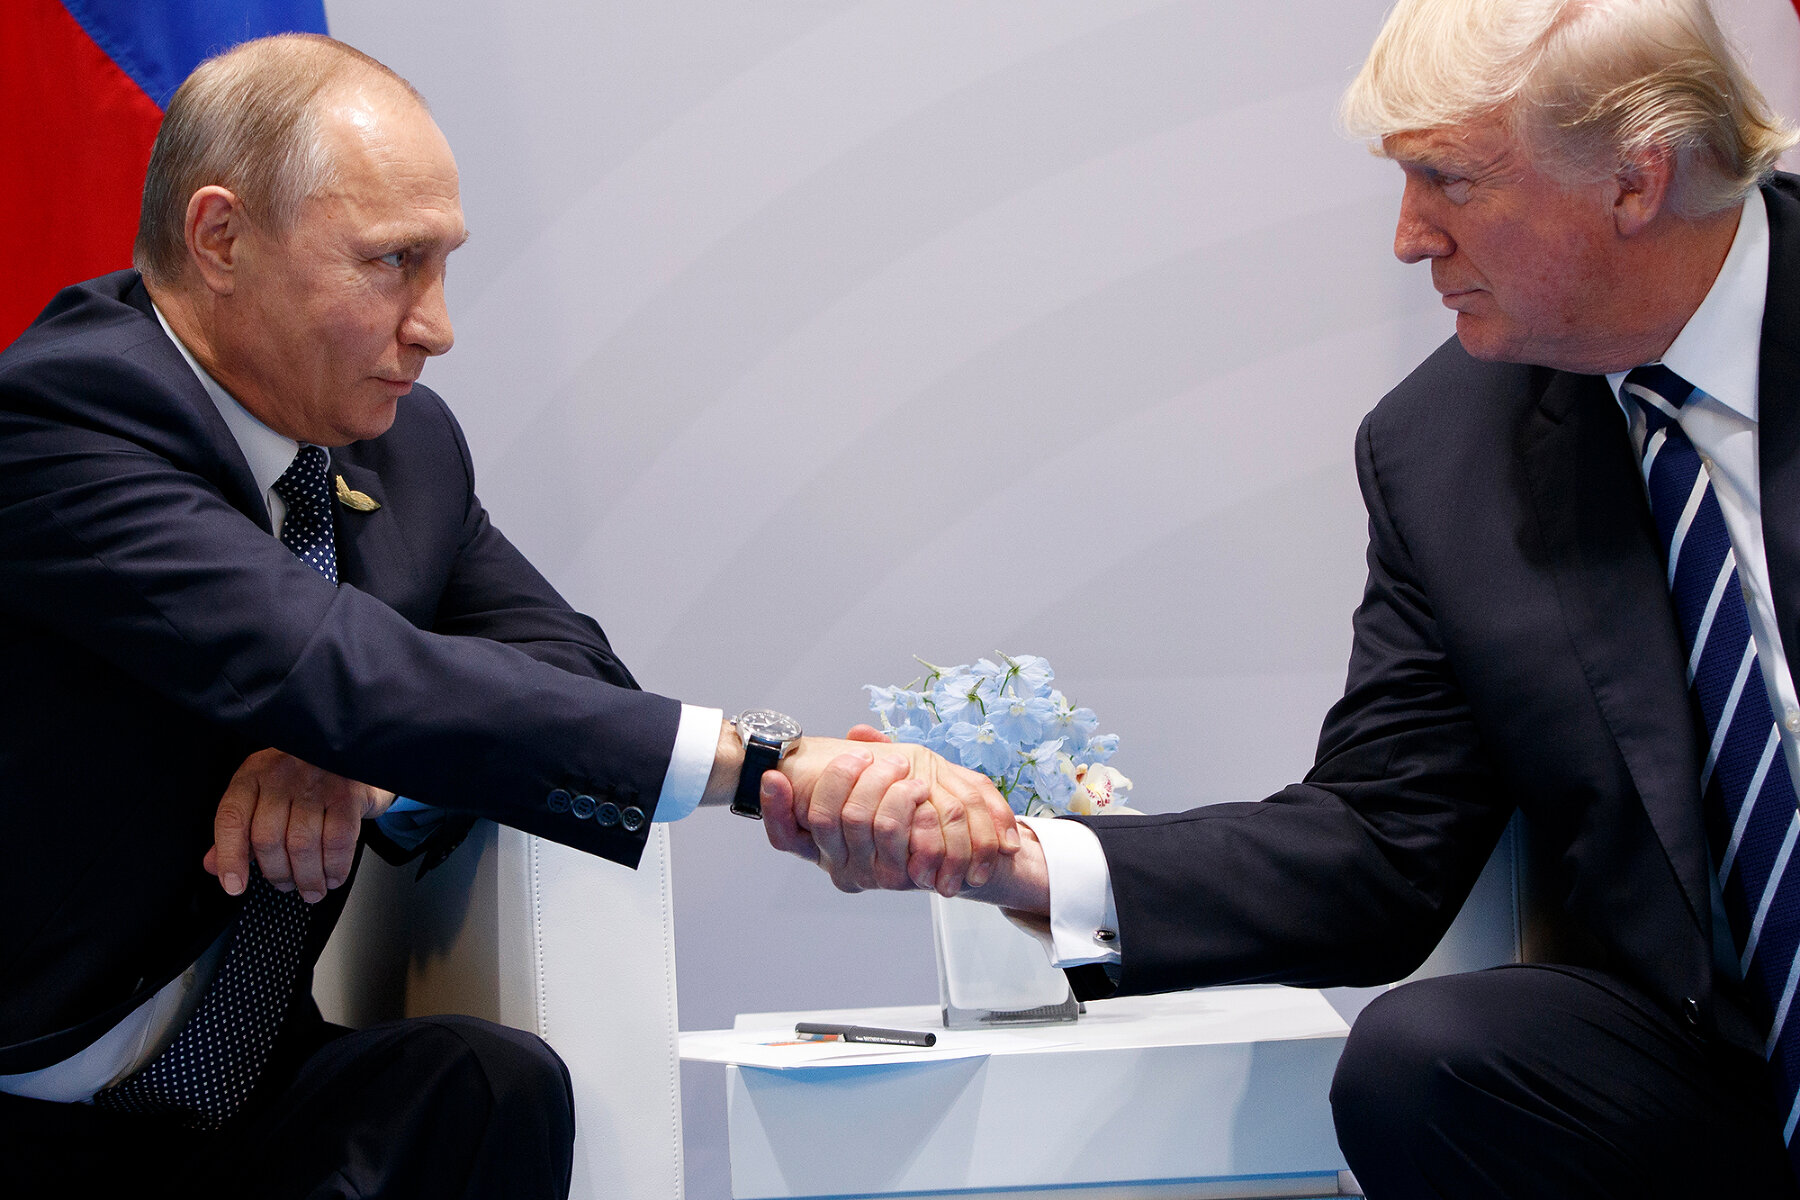 <p>Президент Трамп и президент Путин впервые встретились на полях конференции G20 в 2017 году в Гамбурге. Американский президент <a href="https://www.reuters.com/article/us-g20-germany-trump-putin-talks-idUSKBN19S24E" target="_blank">назвал</a> возможность встретиться с Путиным &laquo;честью&raquo;, а сама встреча проходила на фоне обвинений в сторону России во вмешательстве в американские выборы 2016 года. Особое внимание СМИ тогда <a href="https://meduza.io/shapito/2017/07/07/pervoe-rukopozhatie-trampa-i-putina-nikto-nikogo-ne-peretyanul" target="_blank">уделили</a> непосредственно первому рукопожатию президентов в кулуарах G20: Трамп был известен попытками перетянуть руку оппонента на себя, но в этот раз не стал или не смог следовать своей привычной манере.</p>